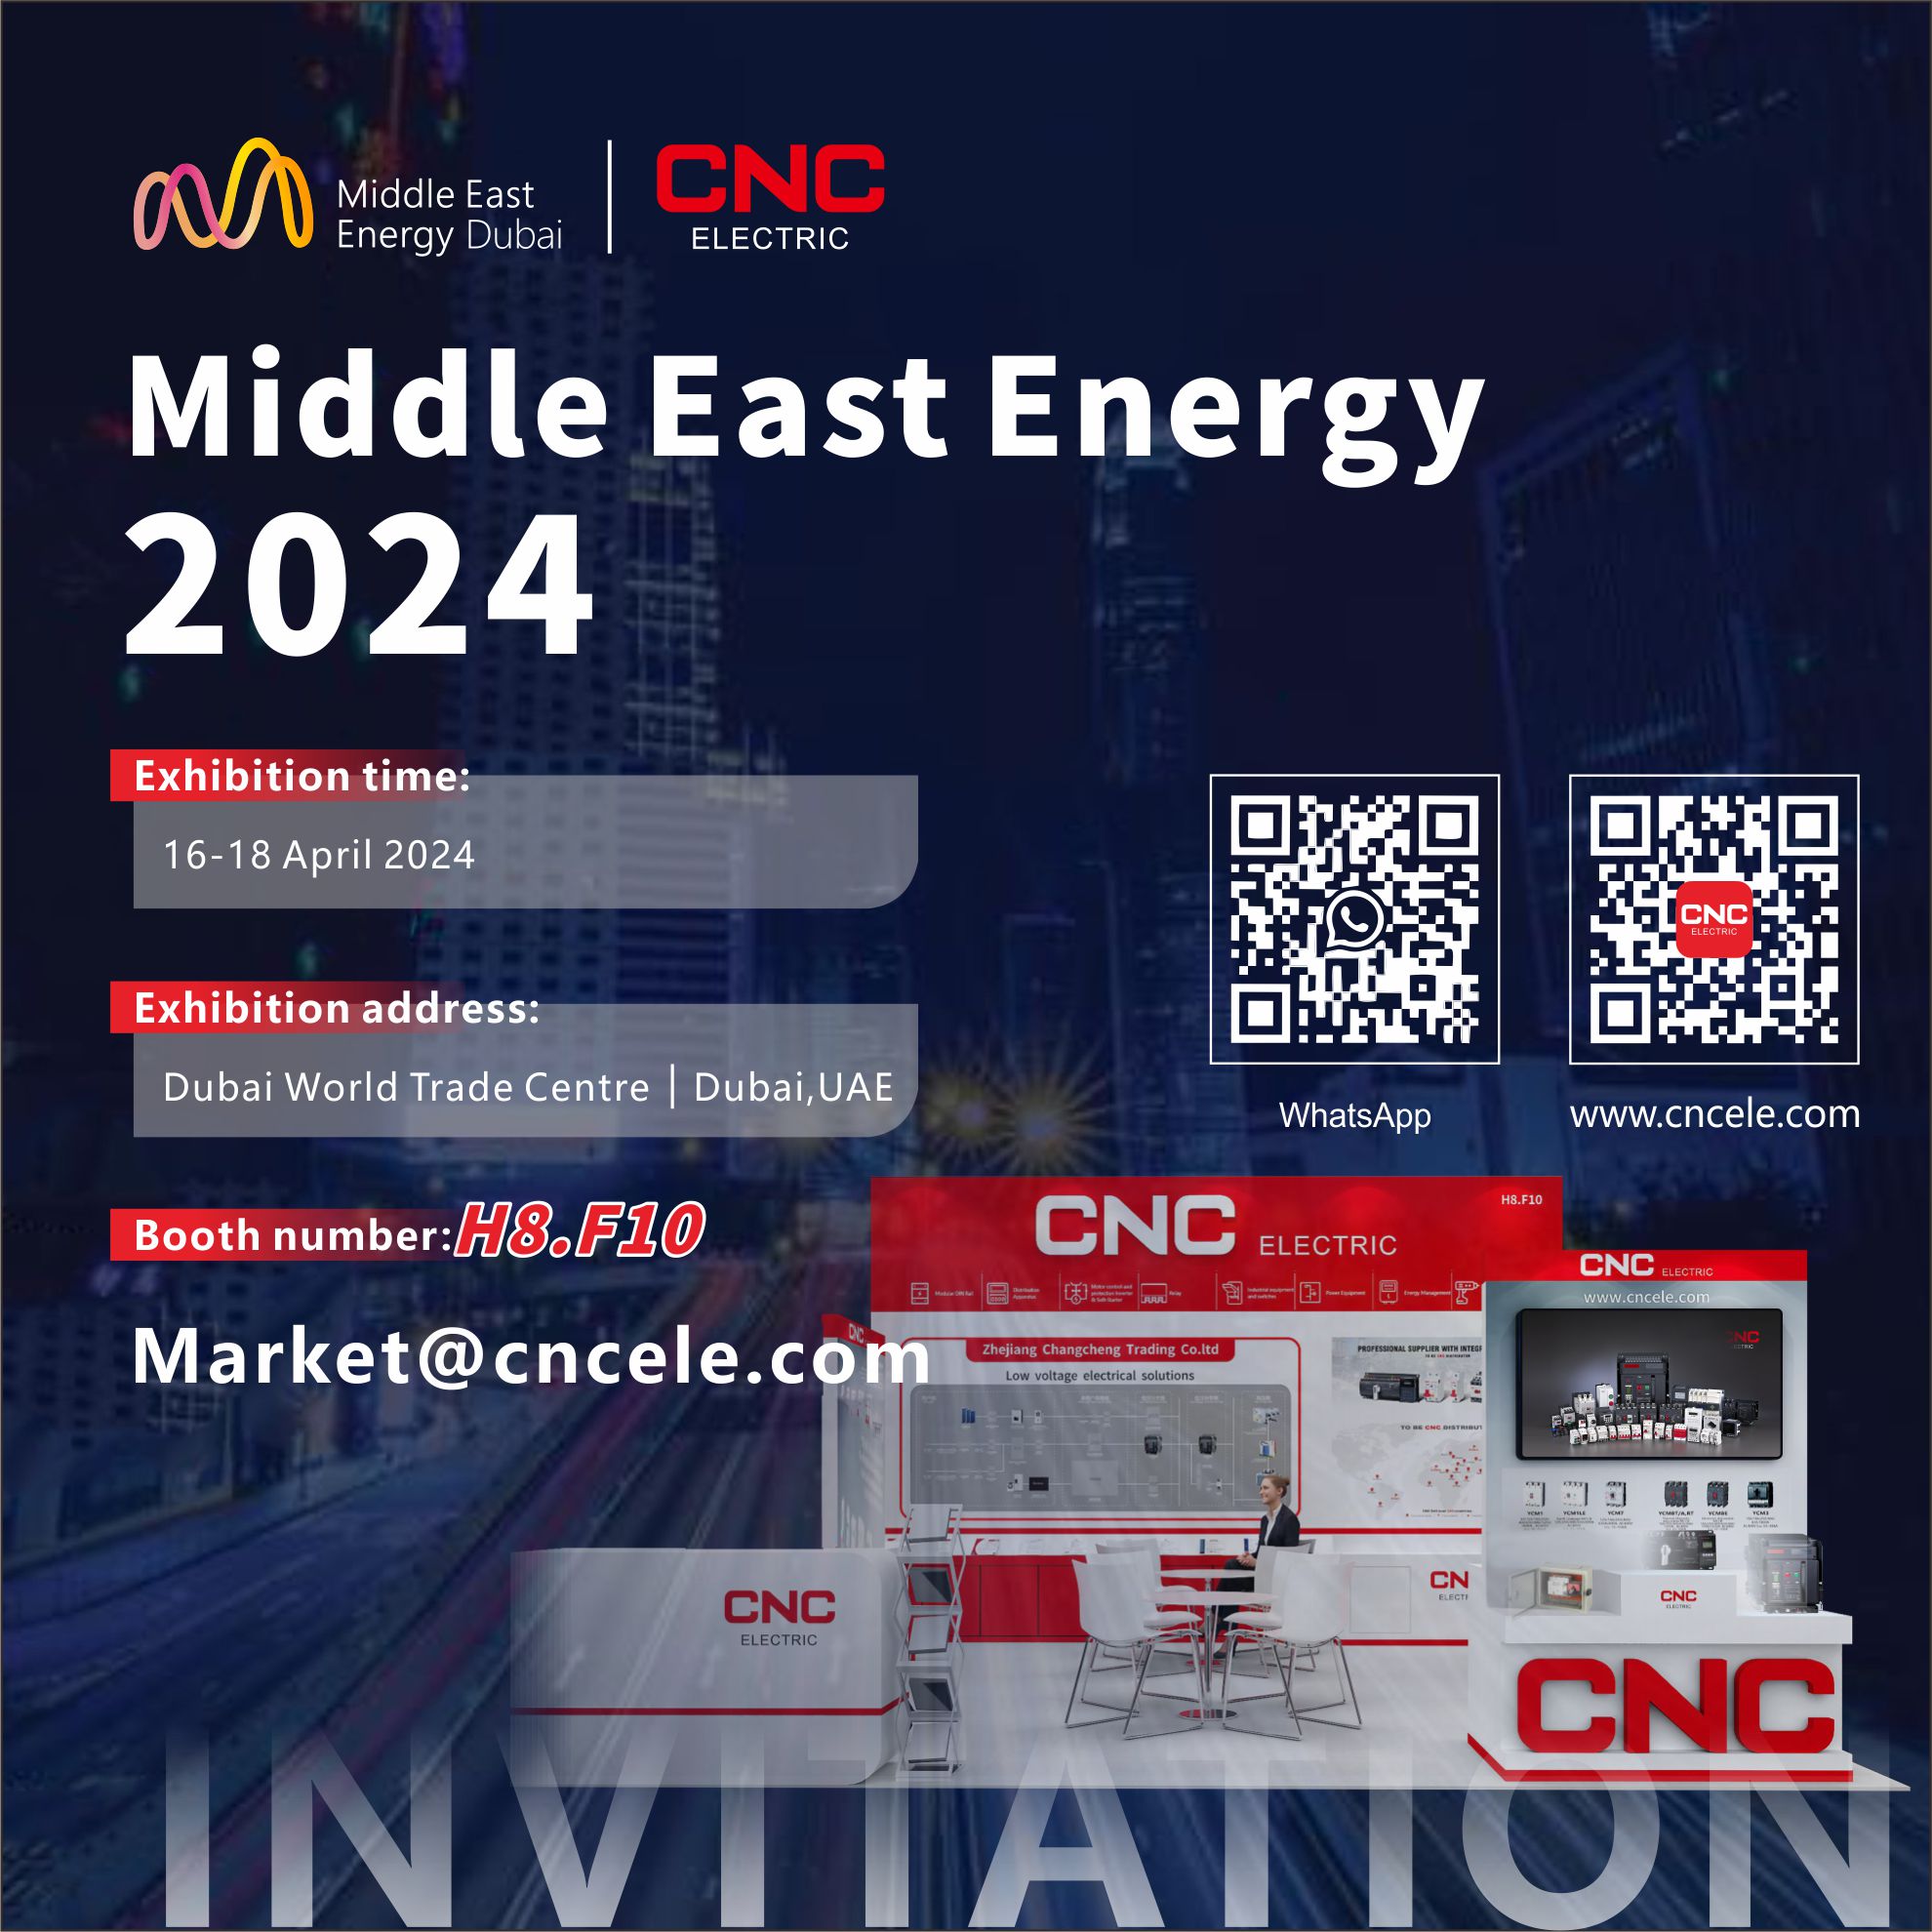 CNC |L'exposició d'energia més completa d'Orient Mitjà i Àfrica